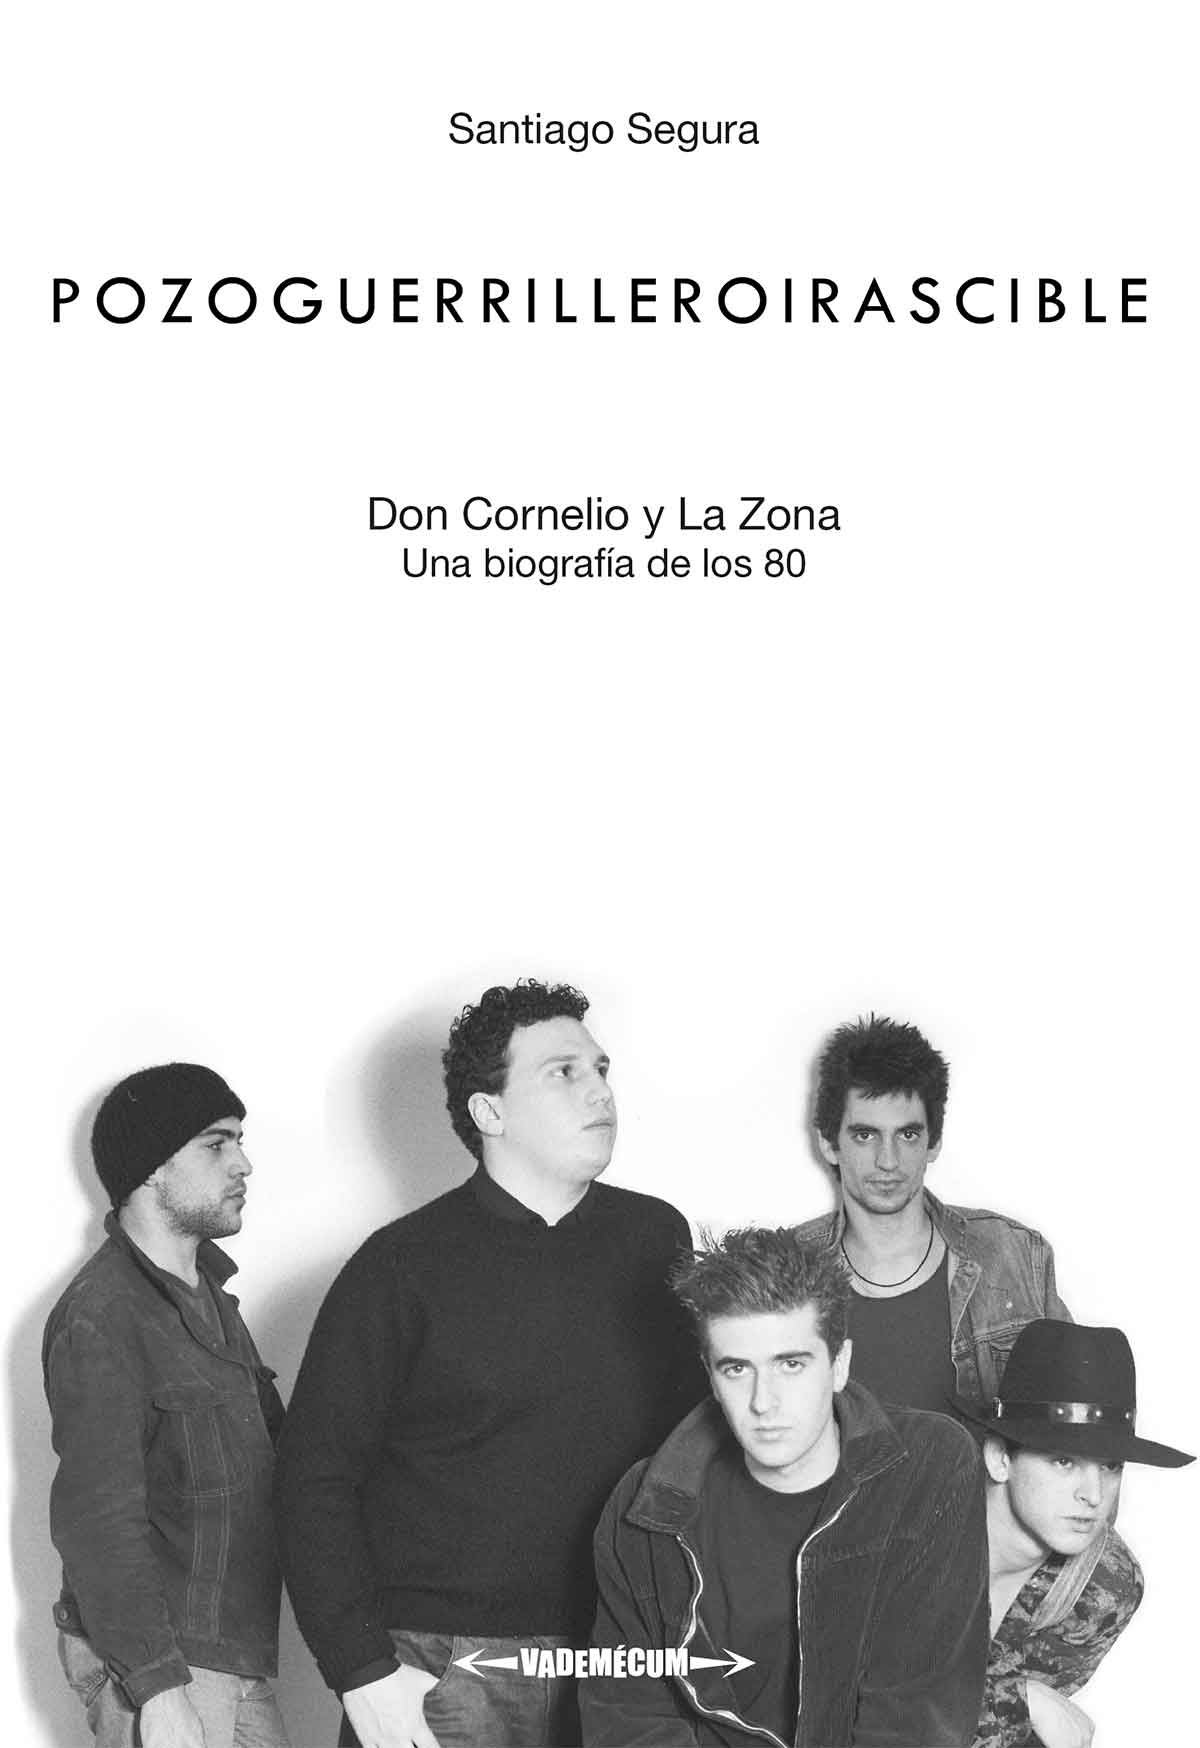 Tapa de "Pozoguerrilleroirascible", libro de Santiago Segura